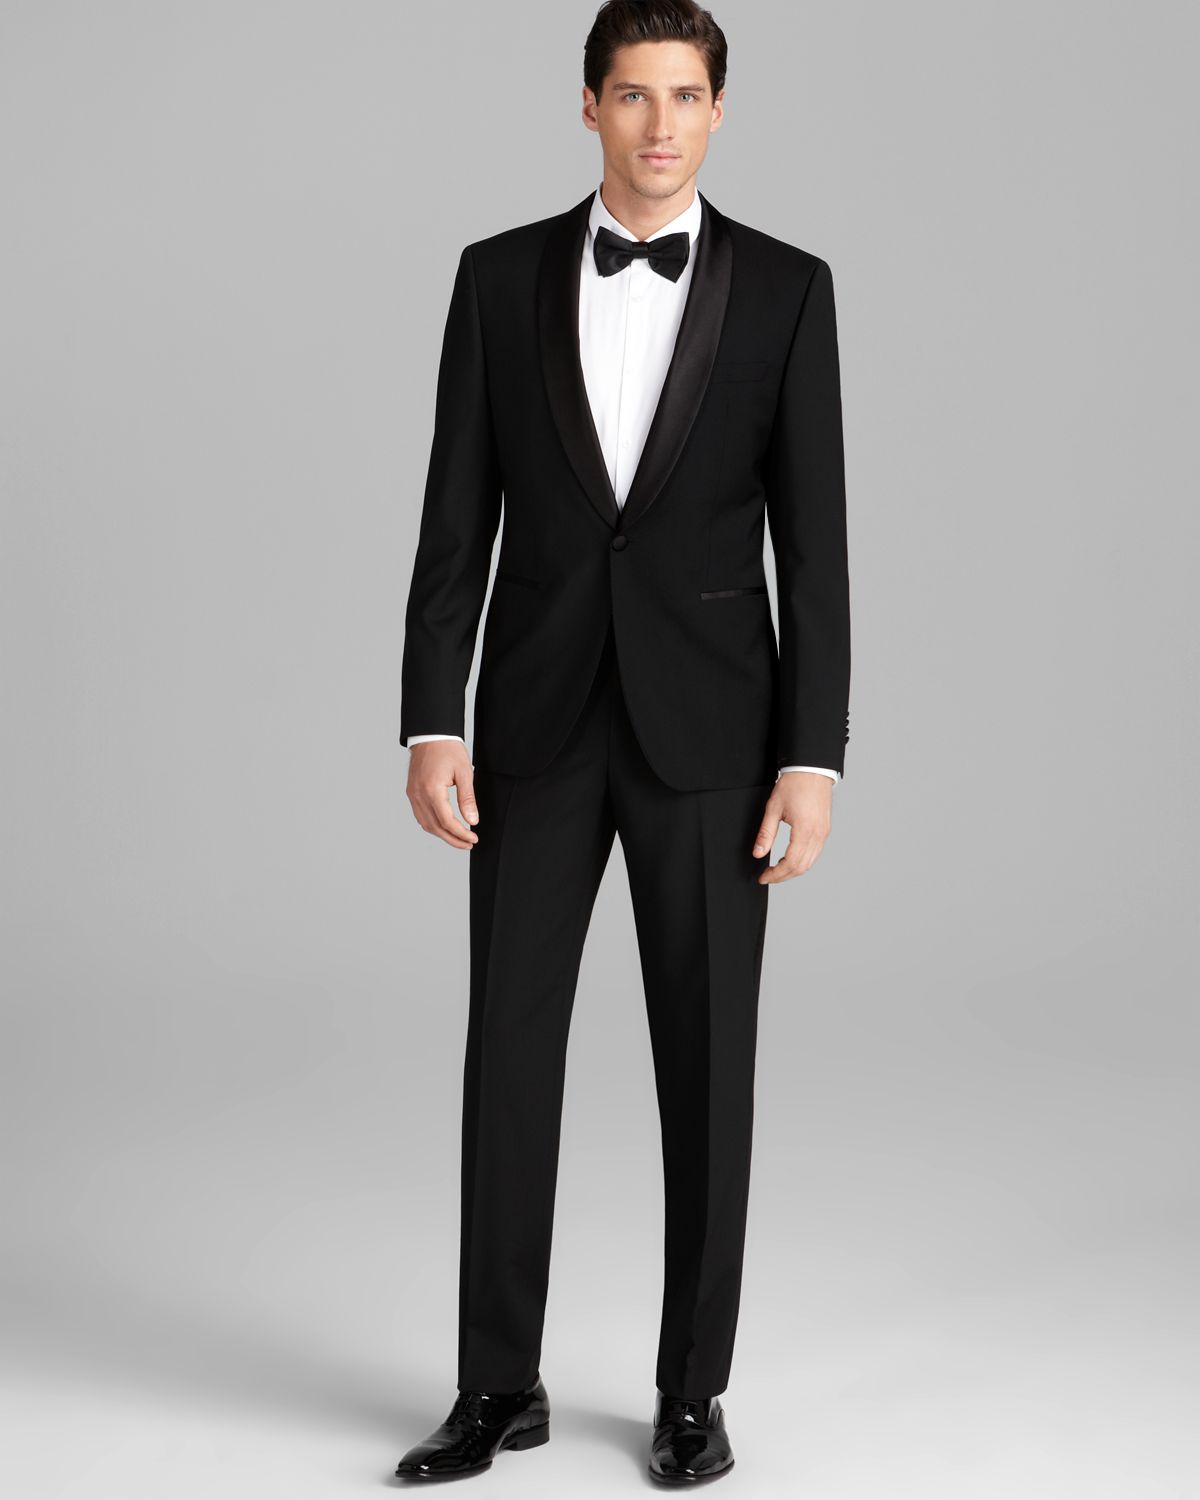 Hugo Boss Boss Sky Gala Tuxedo Suit Regular Fit In Black For Men Lyst